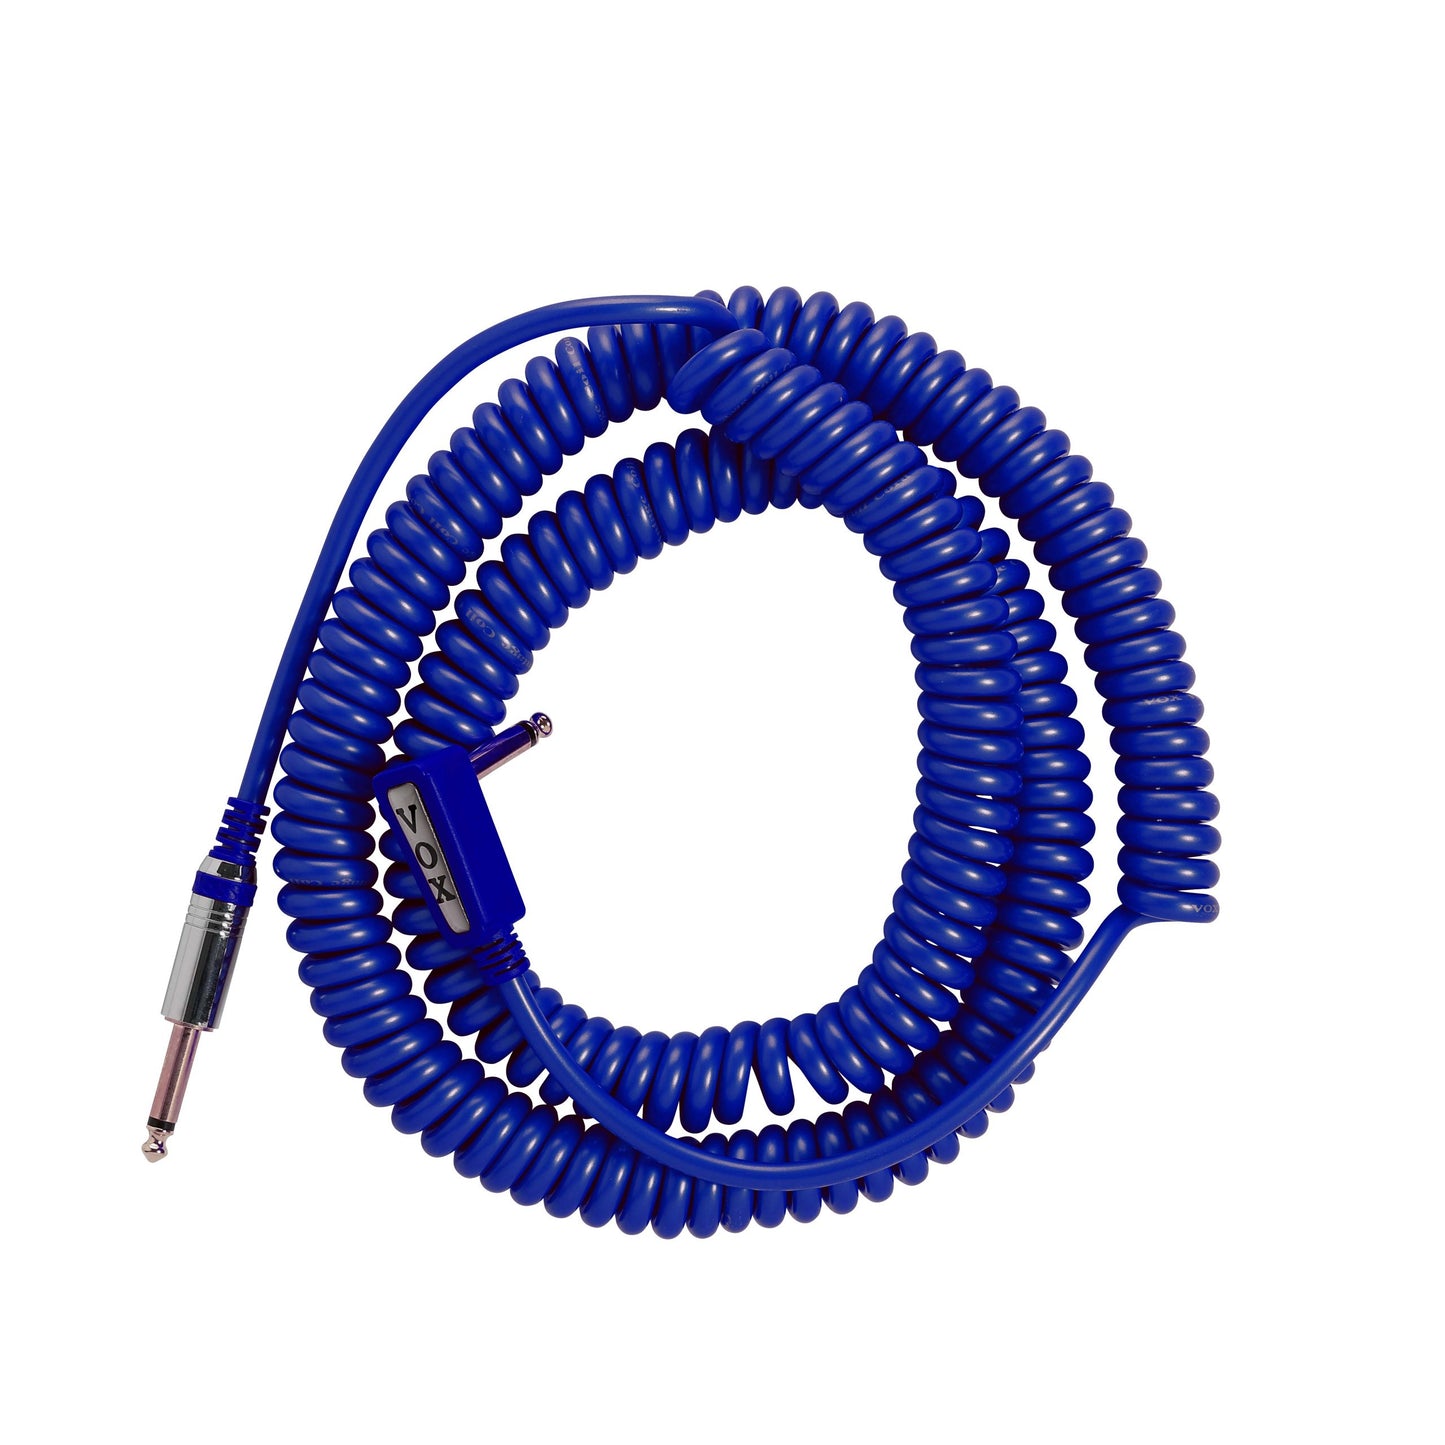 Vox Vintage Coil Cable - 29,5ft - (9 metros) Blue